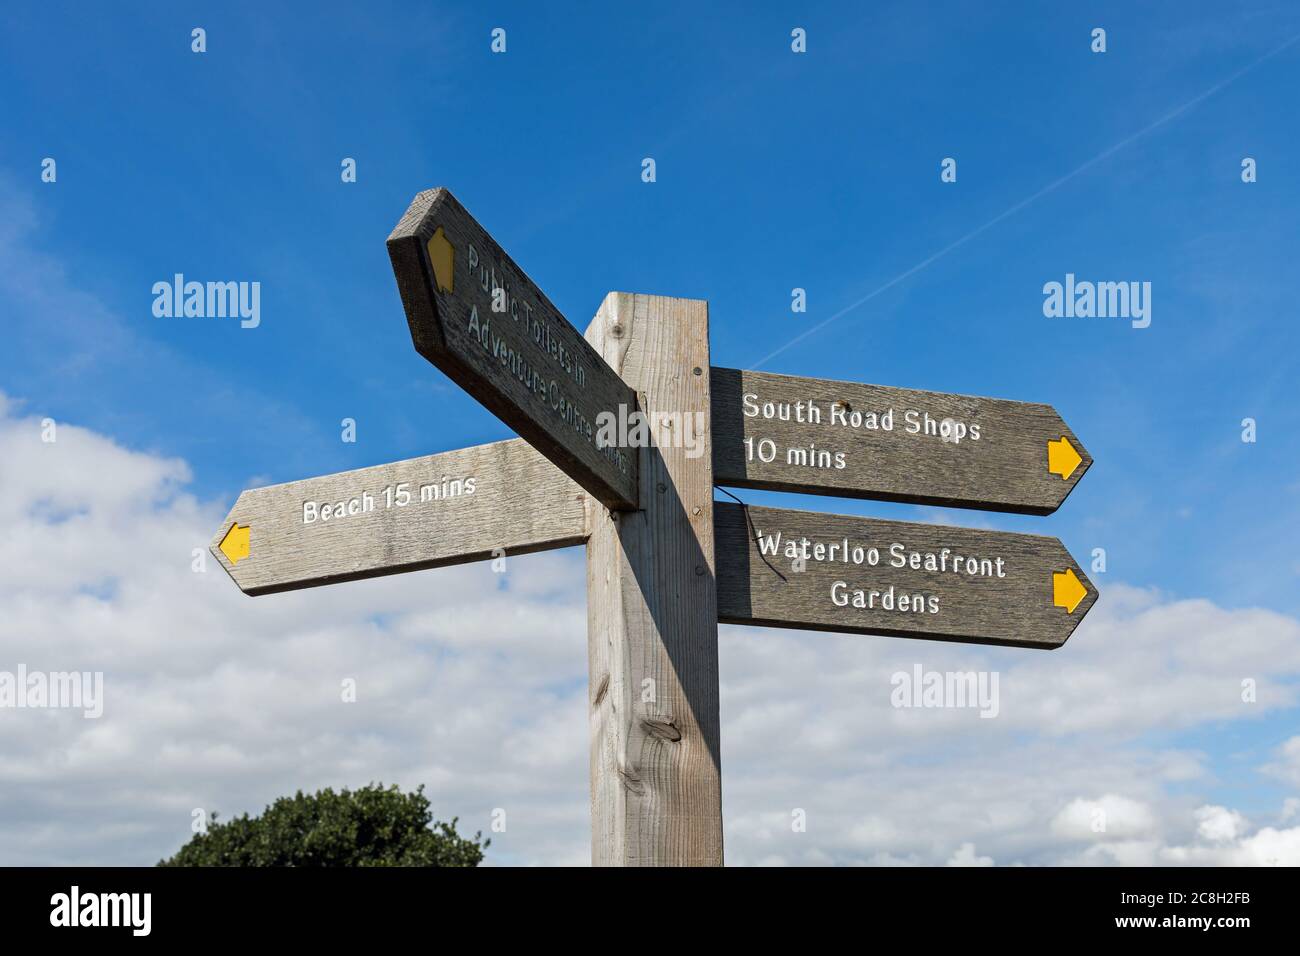 Una señal de madera que indica la dirección de la playa, tiendas de la carretera del sur, jardines del paseo marítimo de Waterloo y centro de aventura - Waterloo, Liverpool, Merseyside, Reino Unido Foto de stock